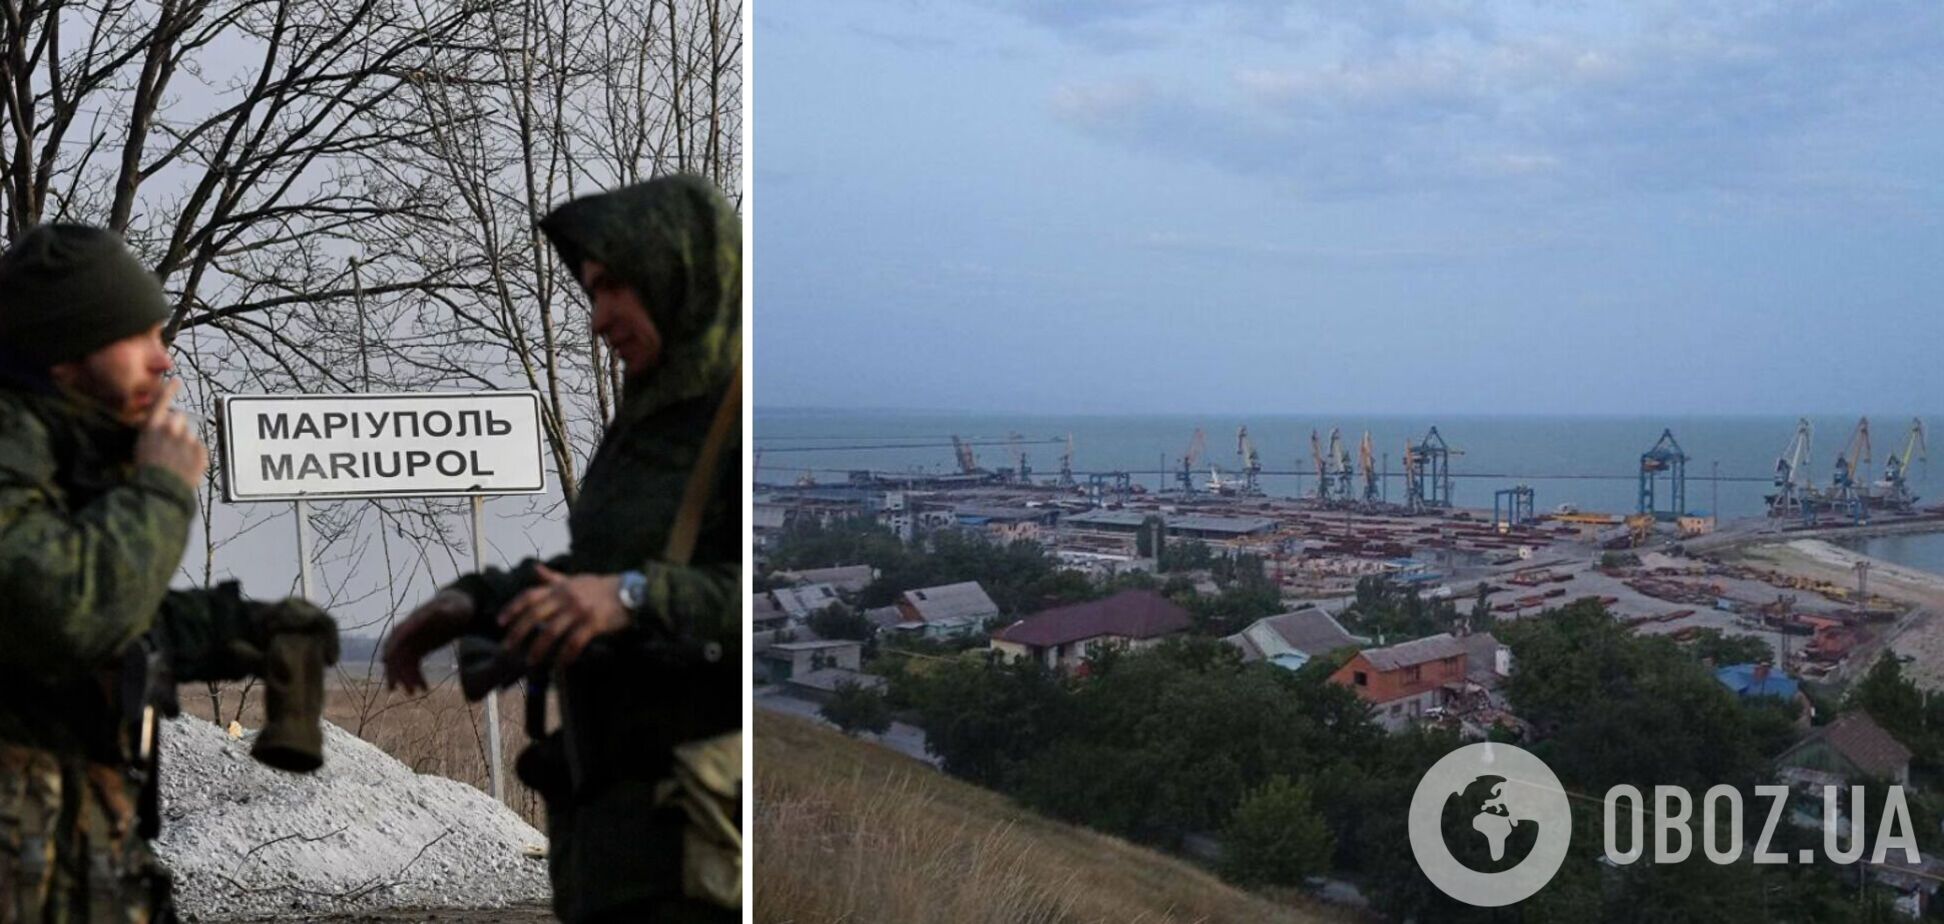 Оккупанты возобновляют работу порта в Мариуполе и готовятся принимать военные грузы, – Андрющенко